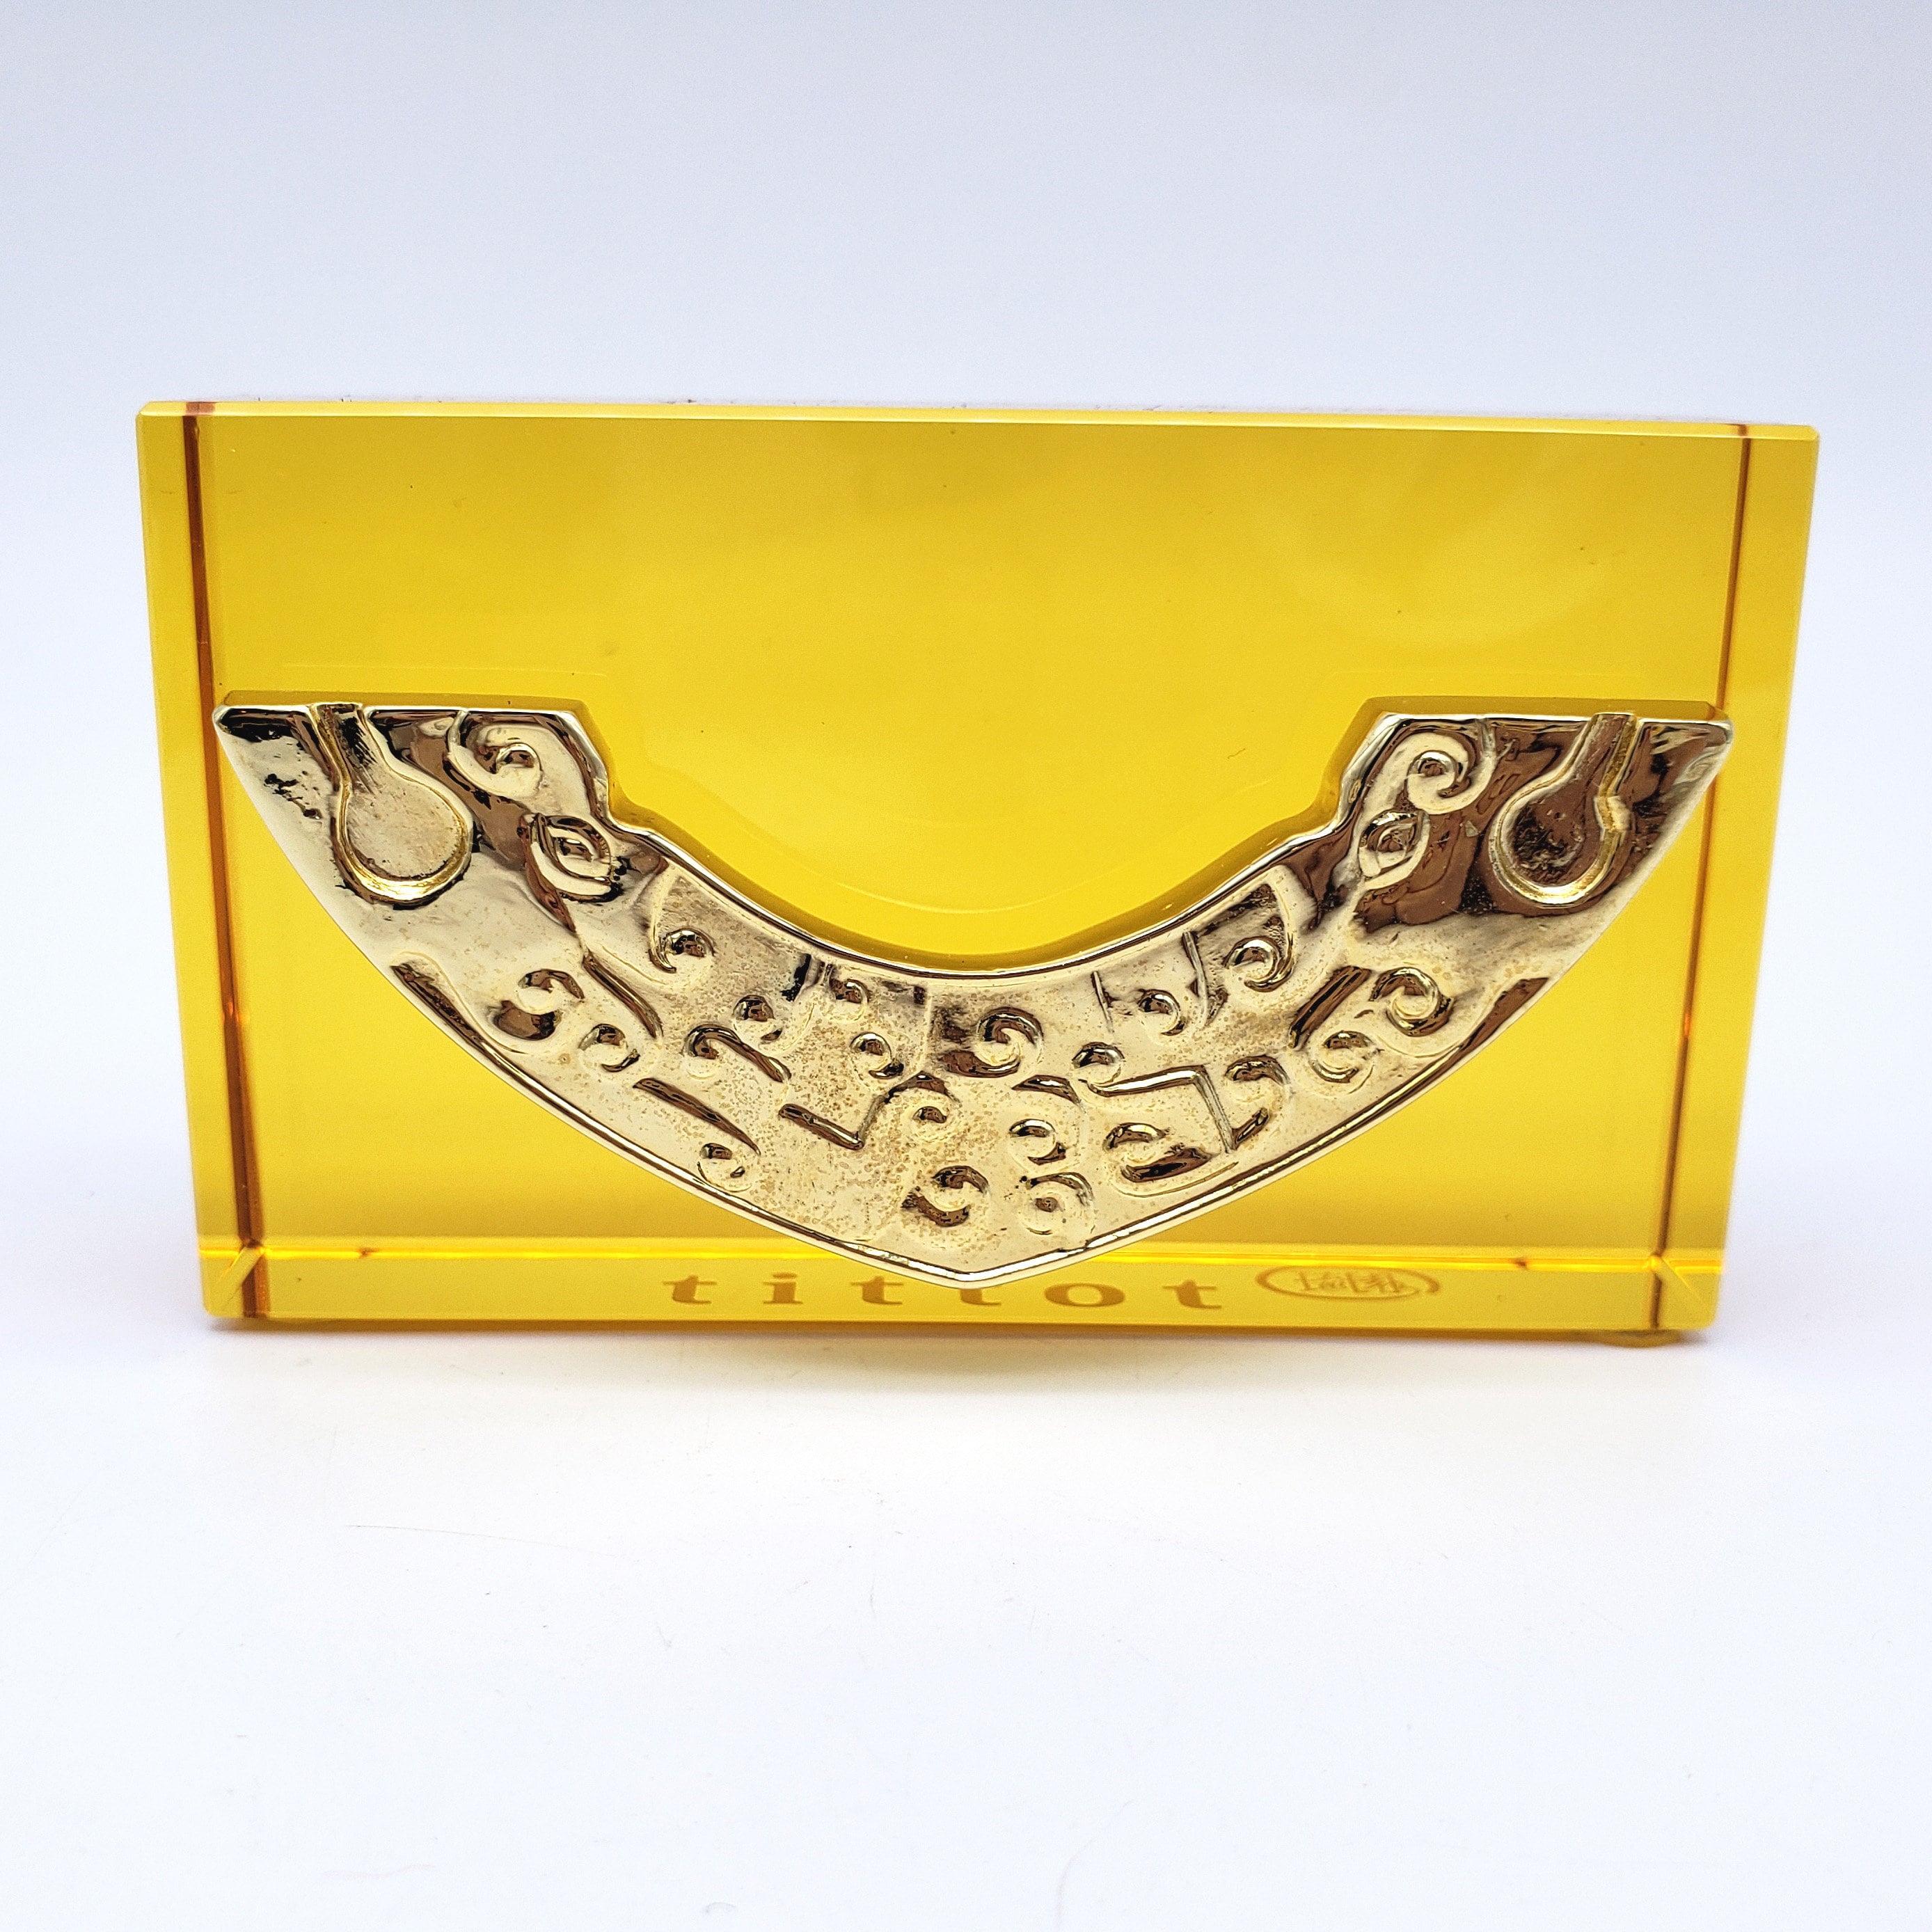 Vintage Tittot Art Glass Business Card Holder Golden Yellow 